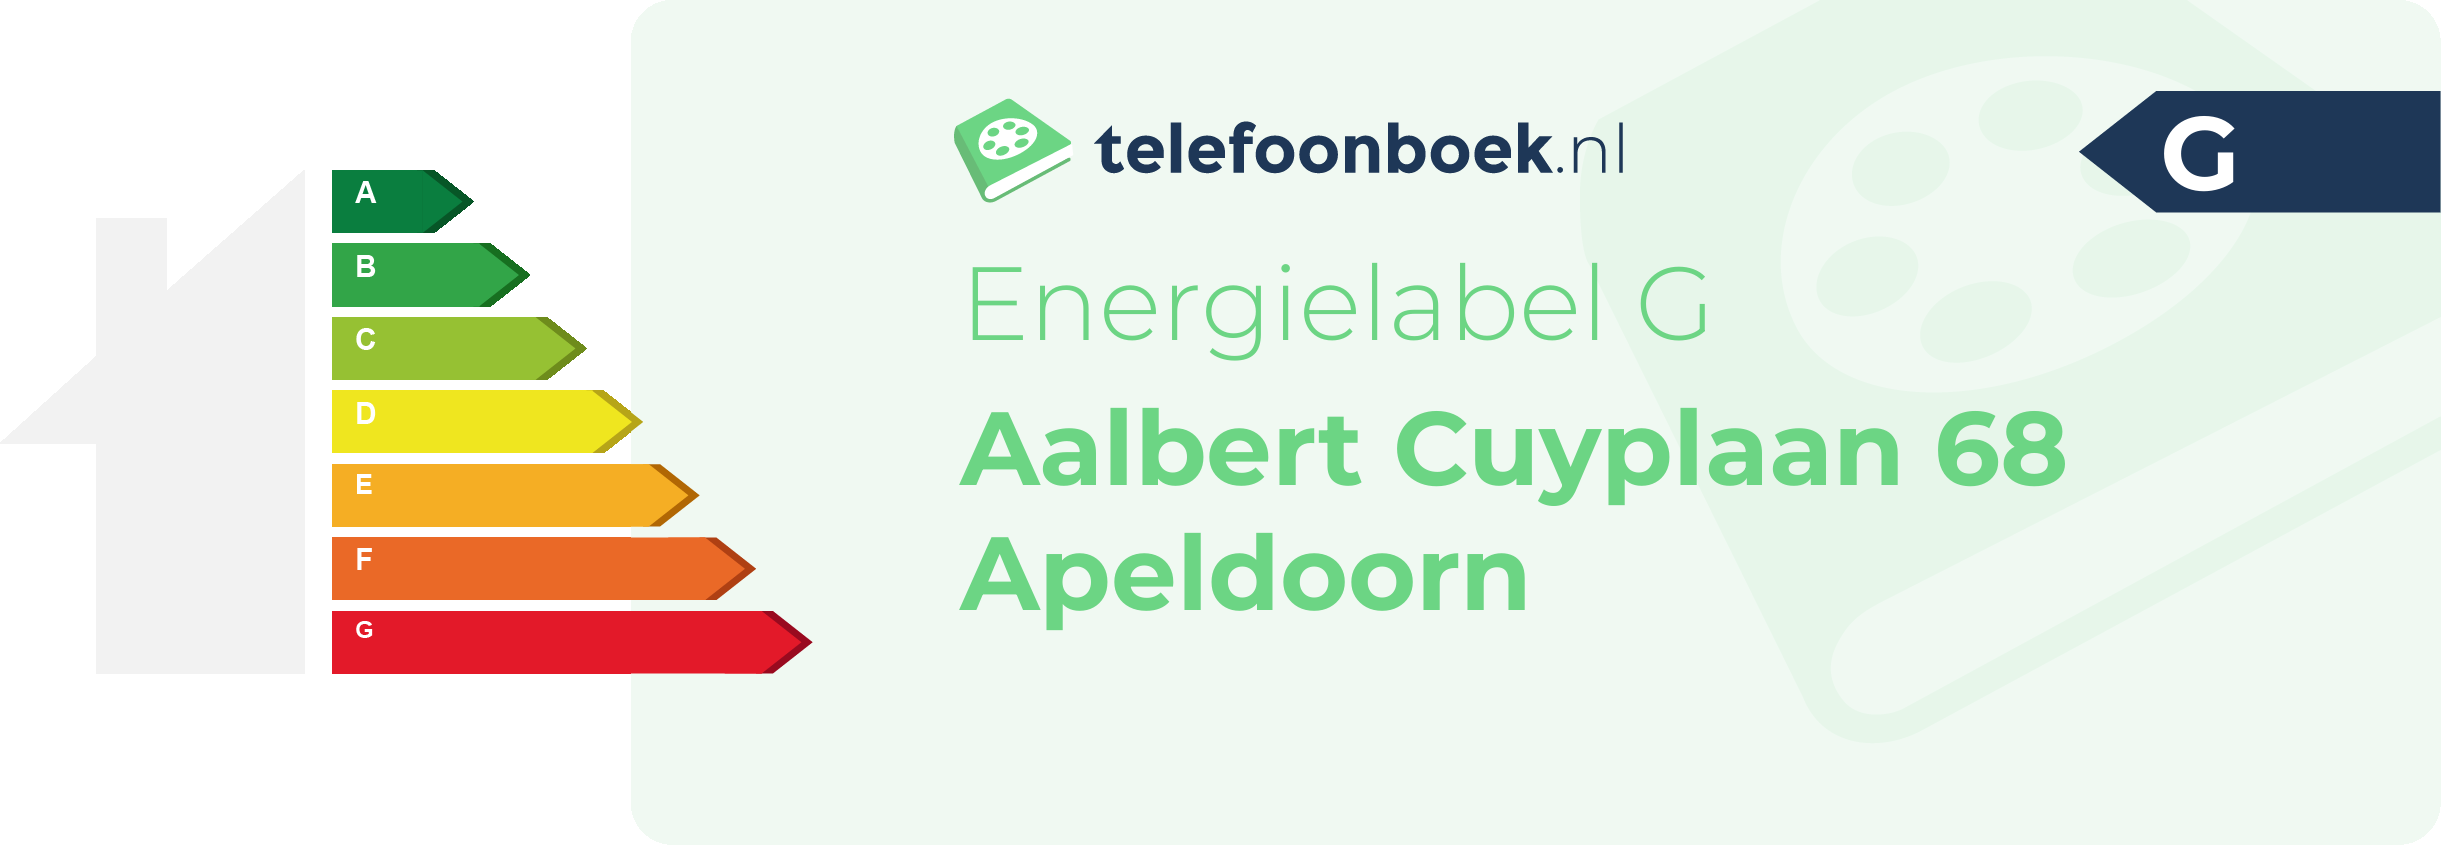 Energielabel Aalbert Cuyplaan 68 Apeldoorn